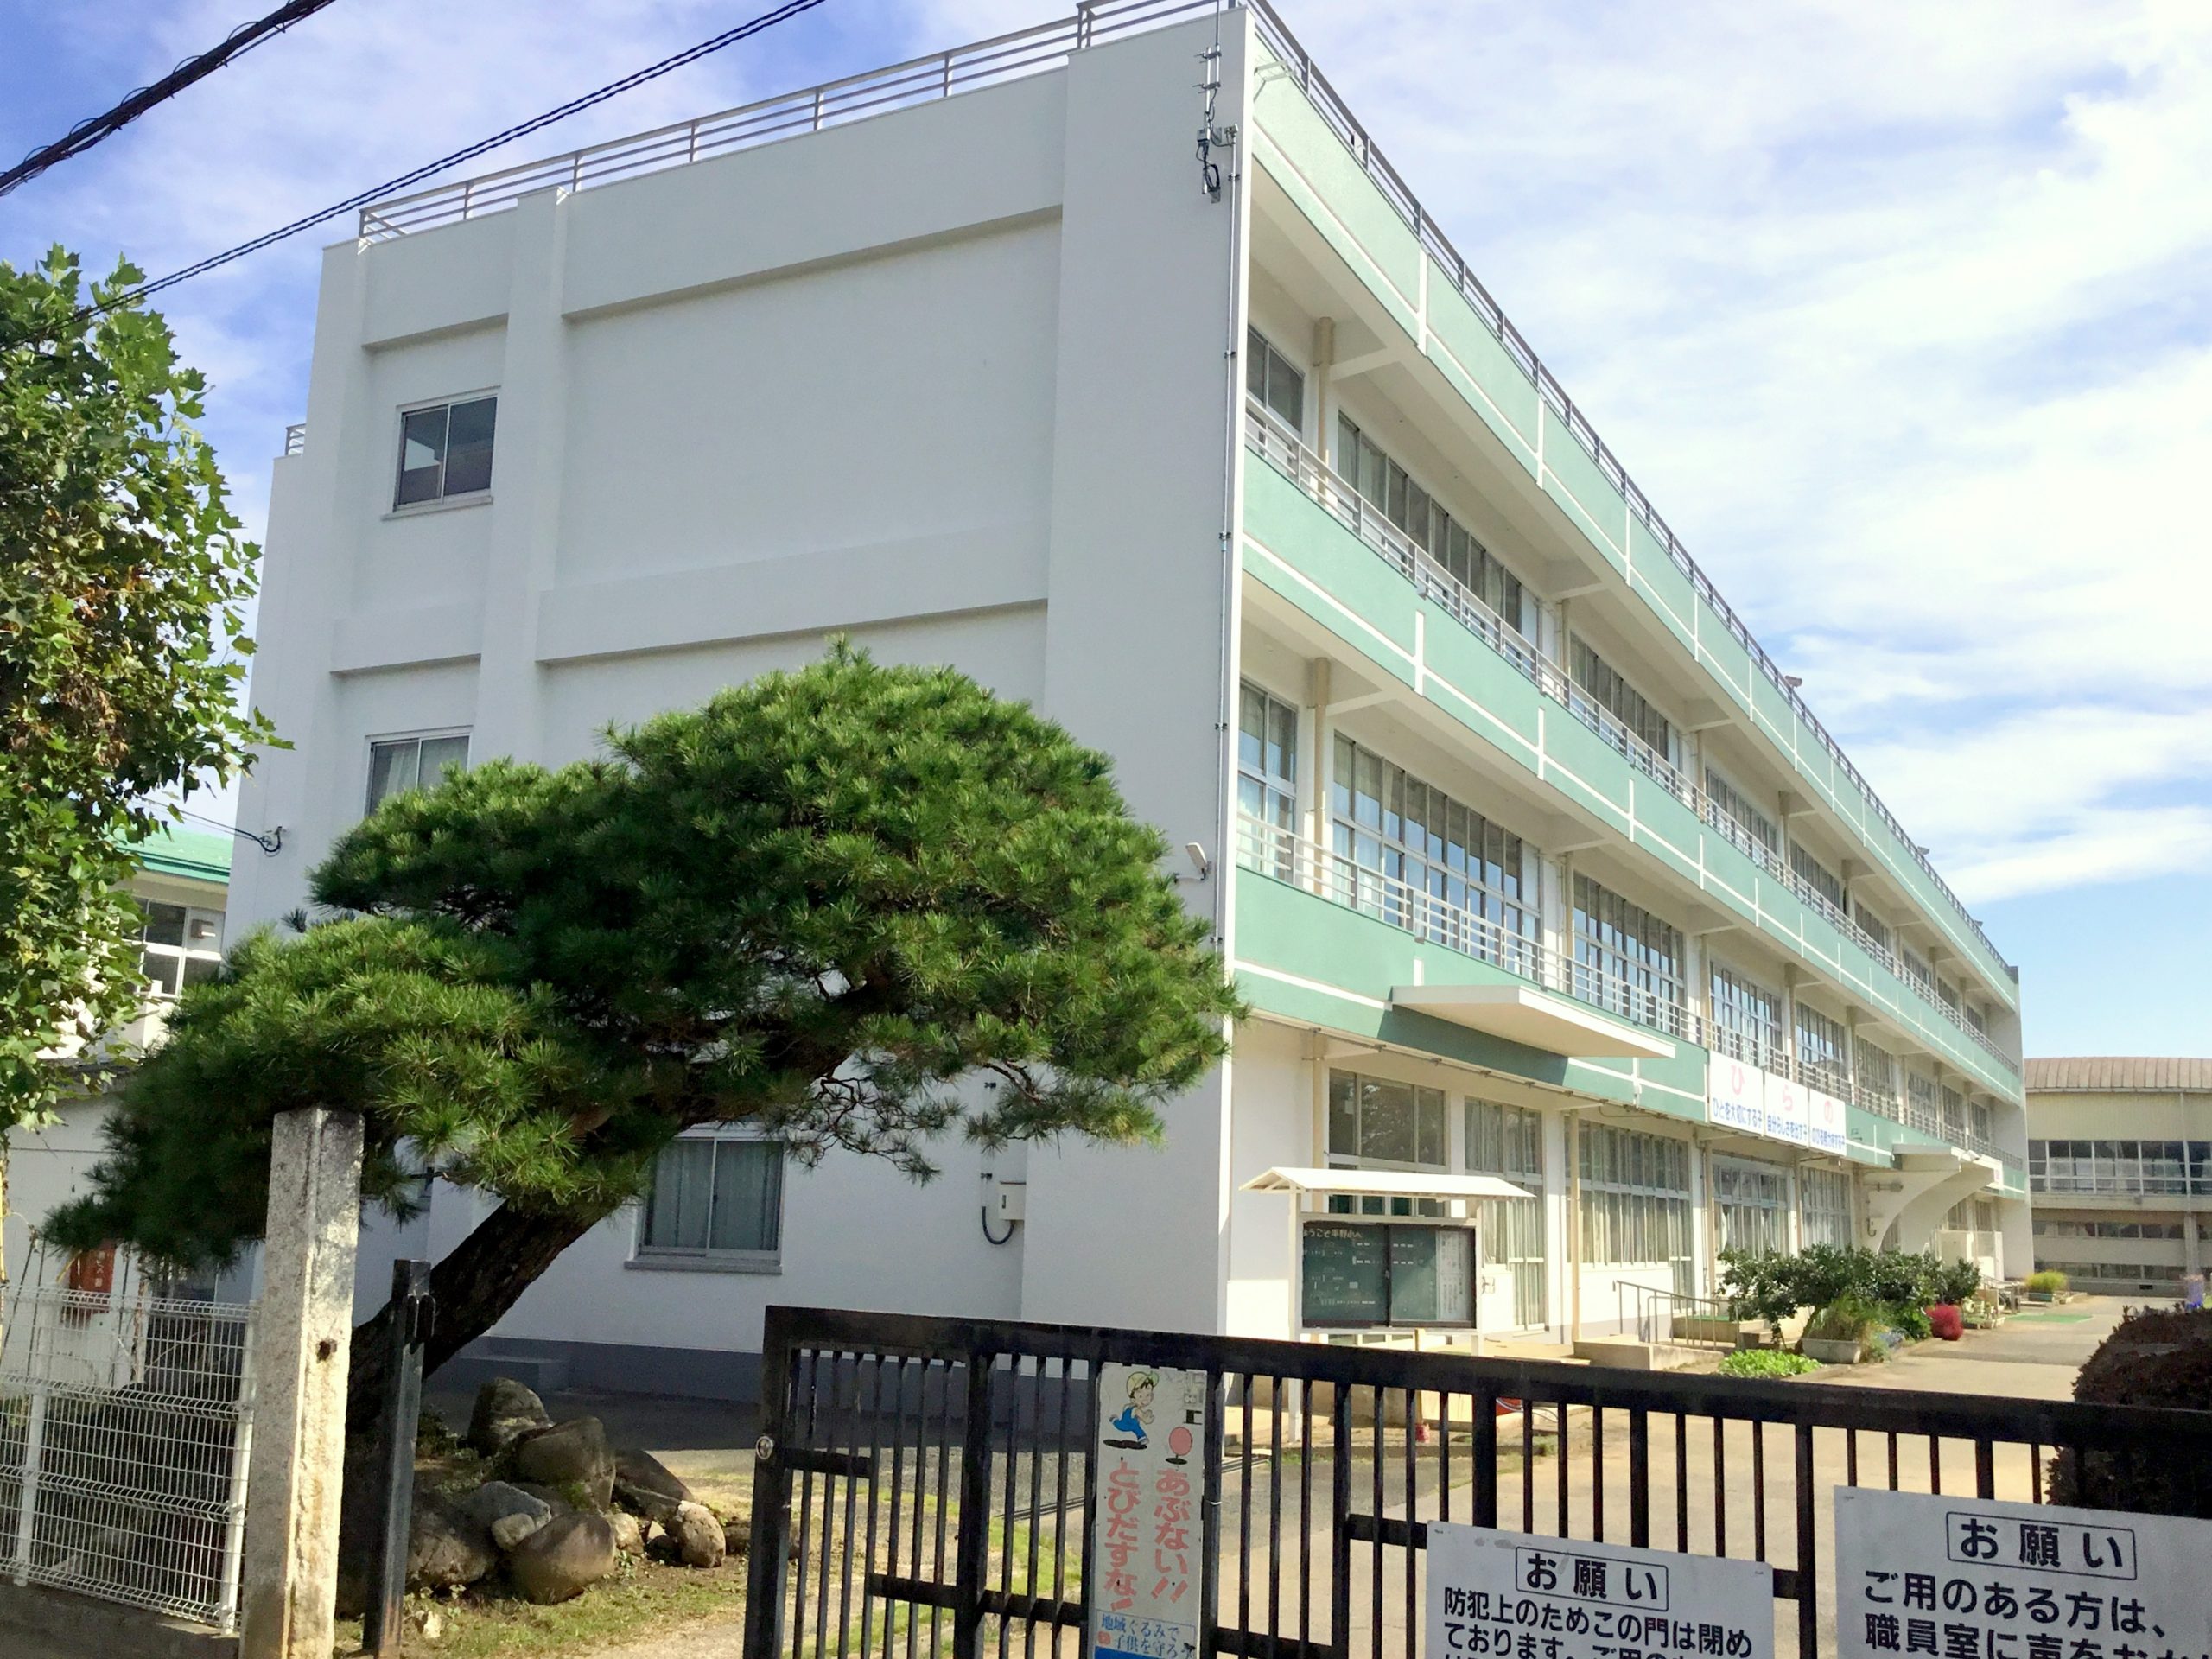 平野小学校校舎屋上防水及び外壁改修工事